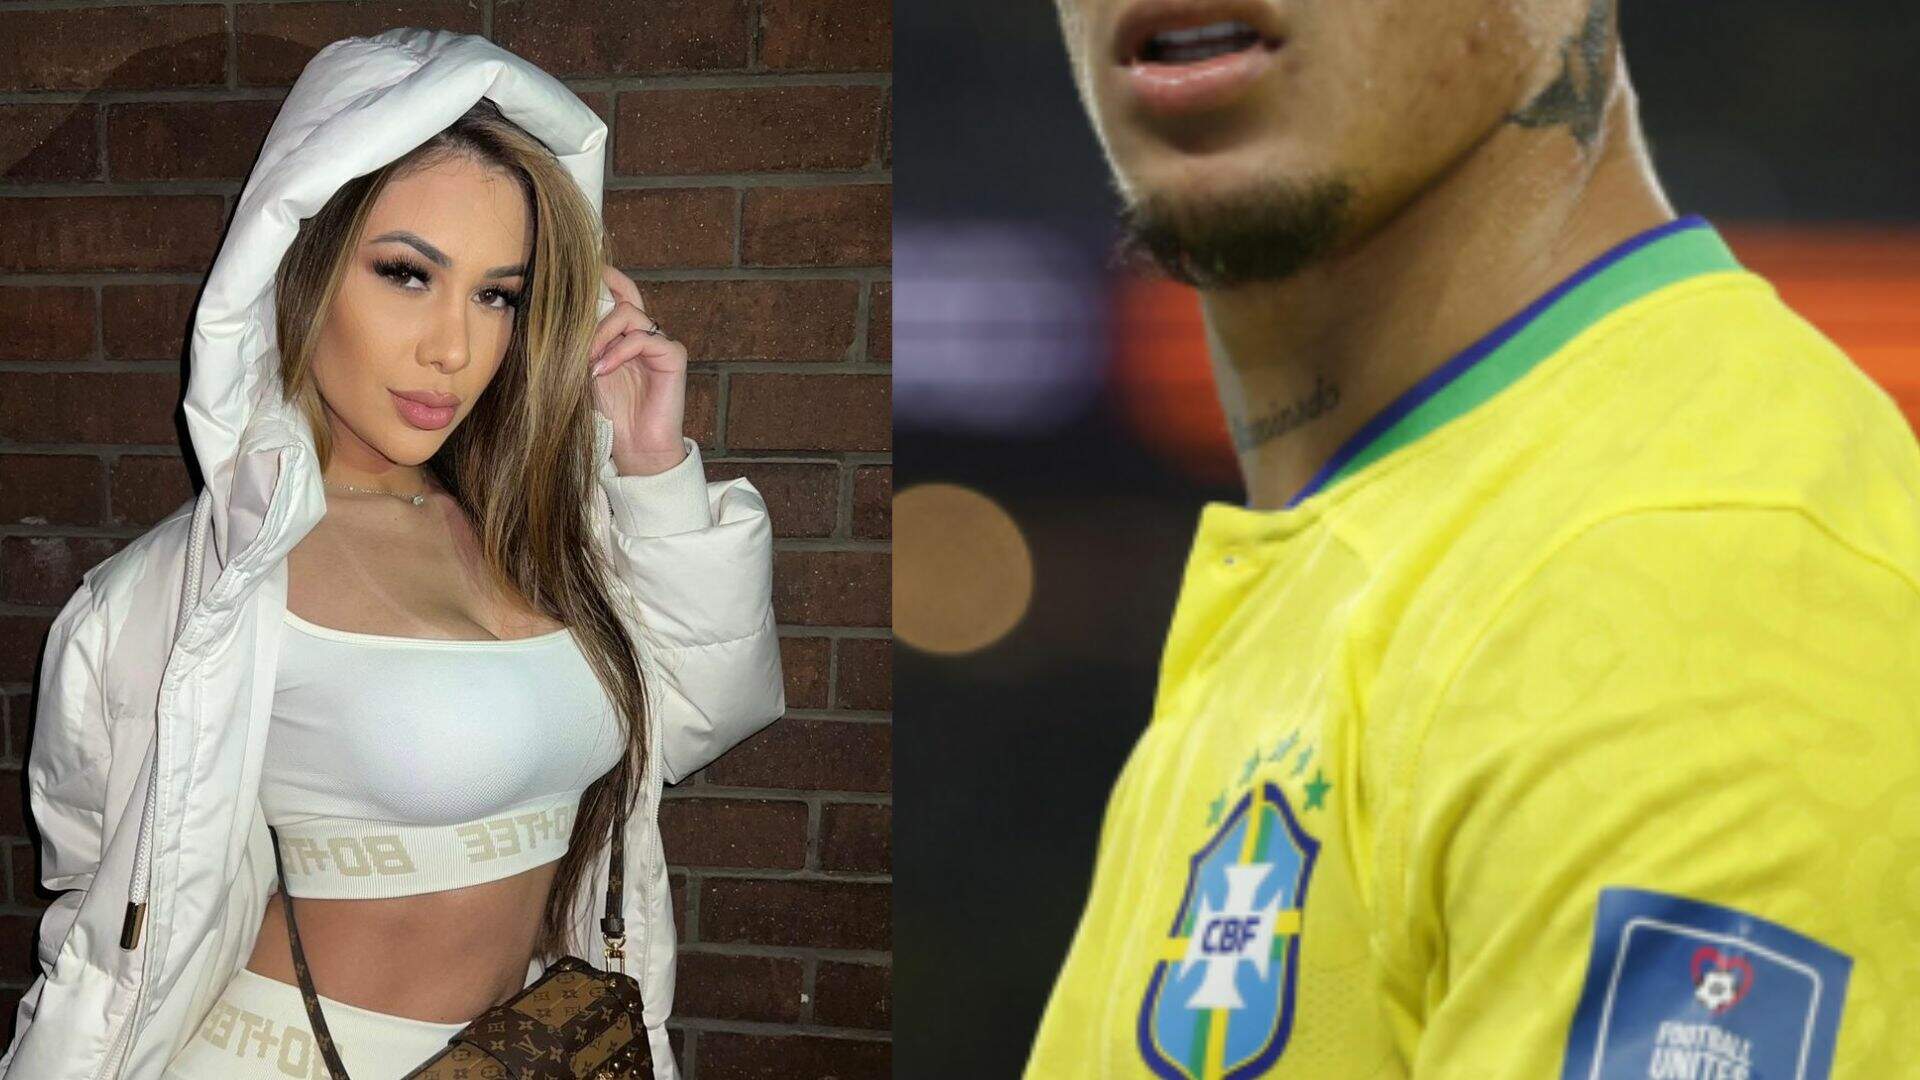 Após ter vídeos e áudios de agressão contra ex publicados, jogador da seleção brasileira se pronuncia